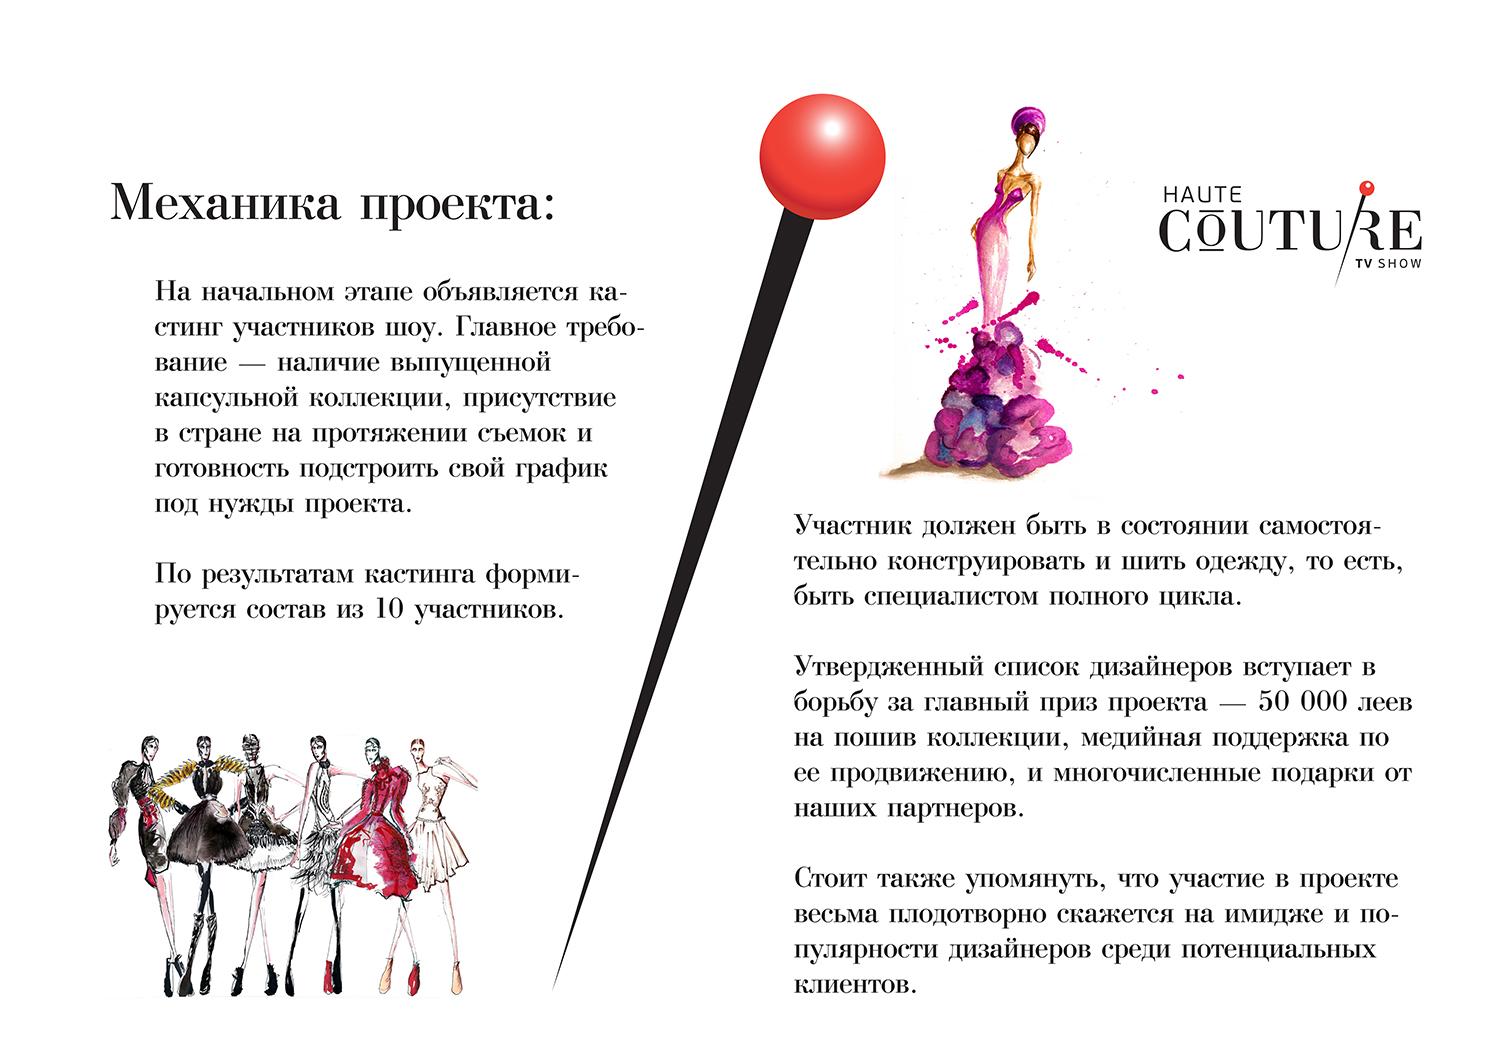 В Молдове стартует проект Haute Couture